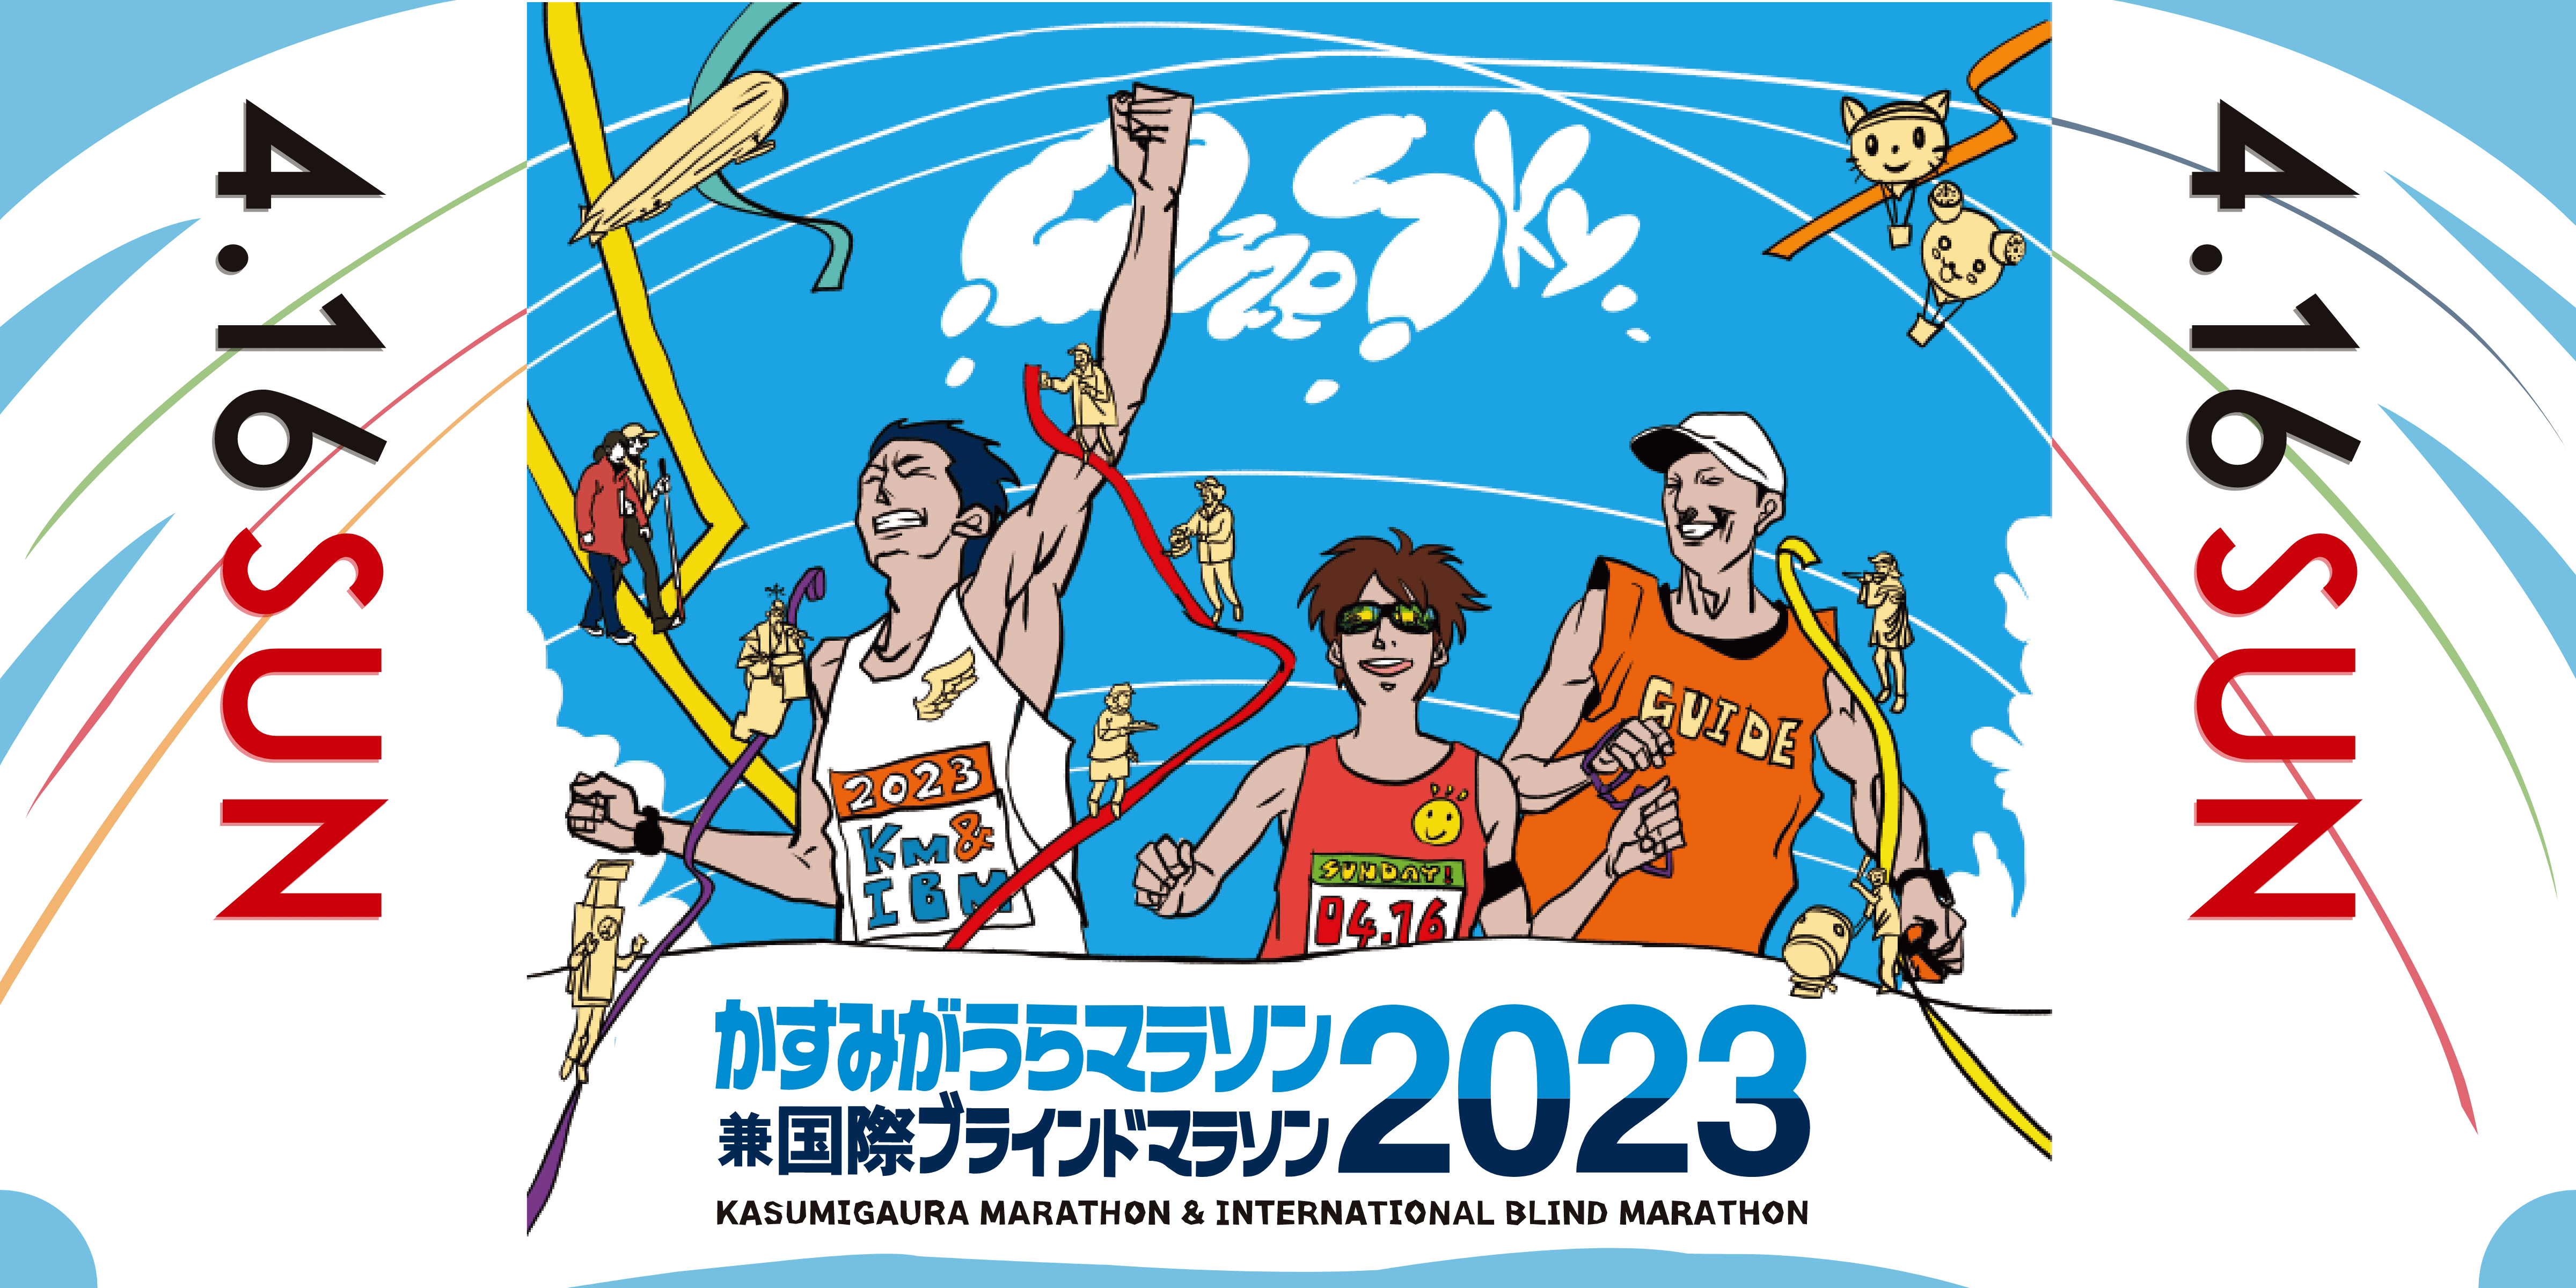 かすみがうらマラソン 兼 国際ブラインドマラソン 2023